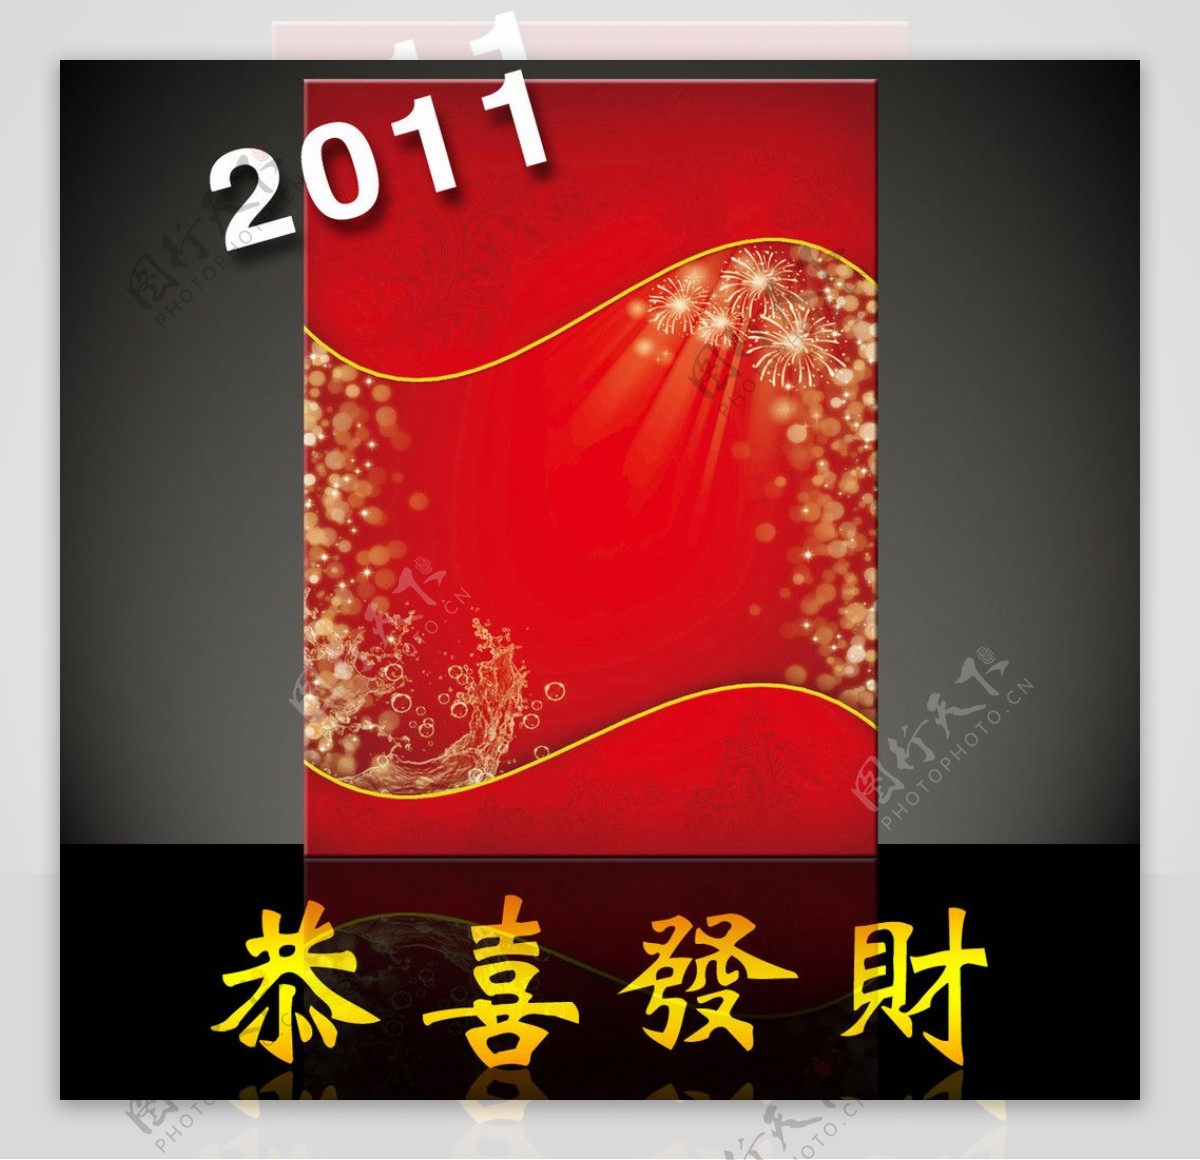 2011宣传广告红色背景图片